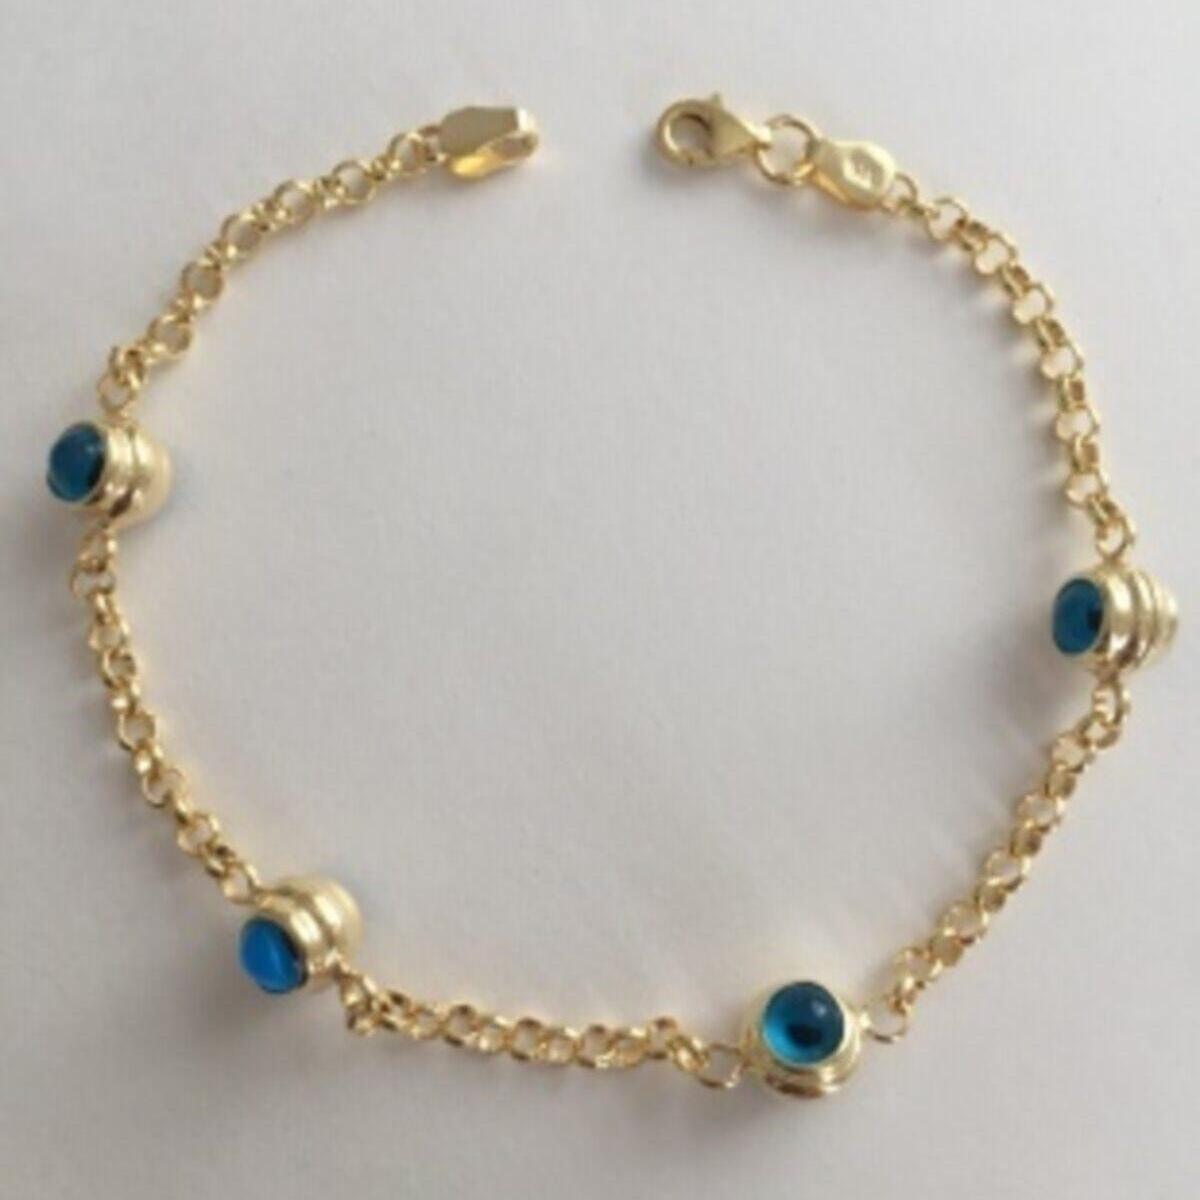 Eye of Horus Gold Bracelet • Karma And Luck Bracelet • Gift For Wife - Trending Silver Gifts